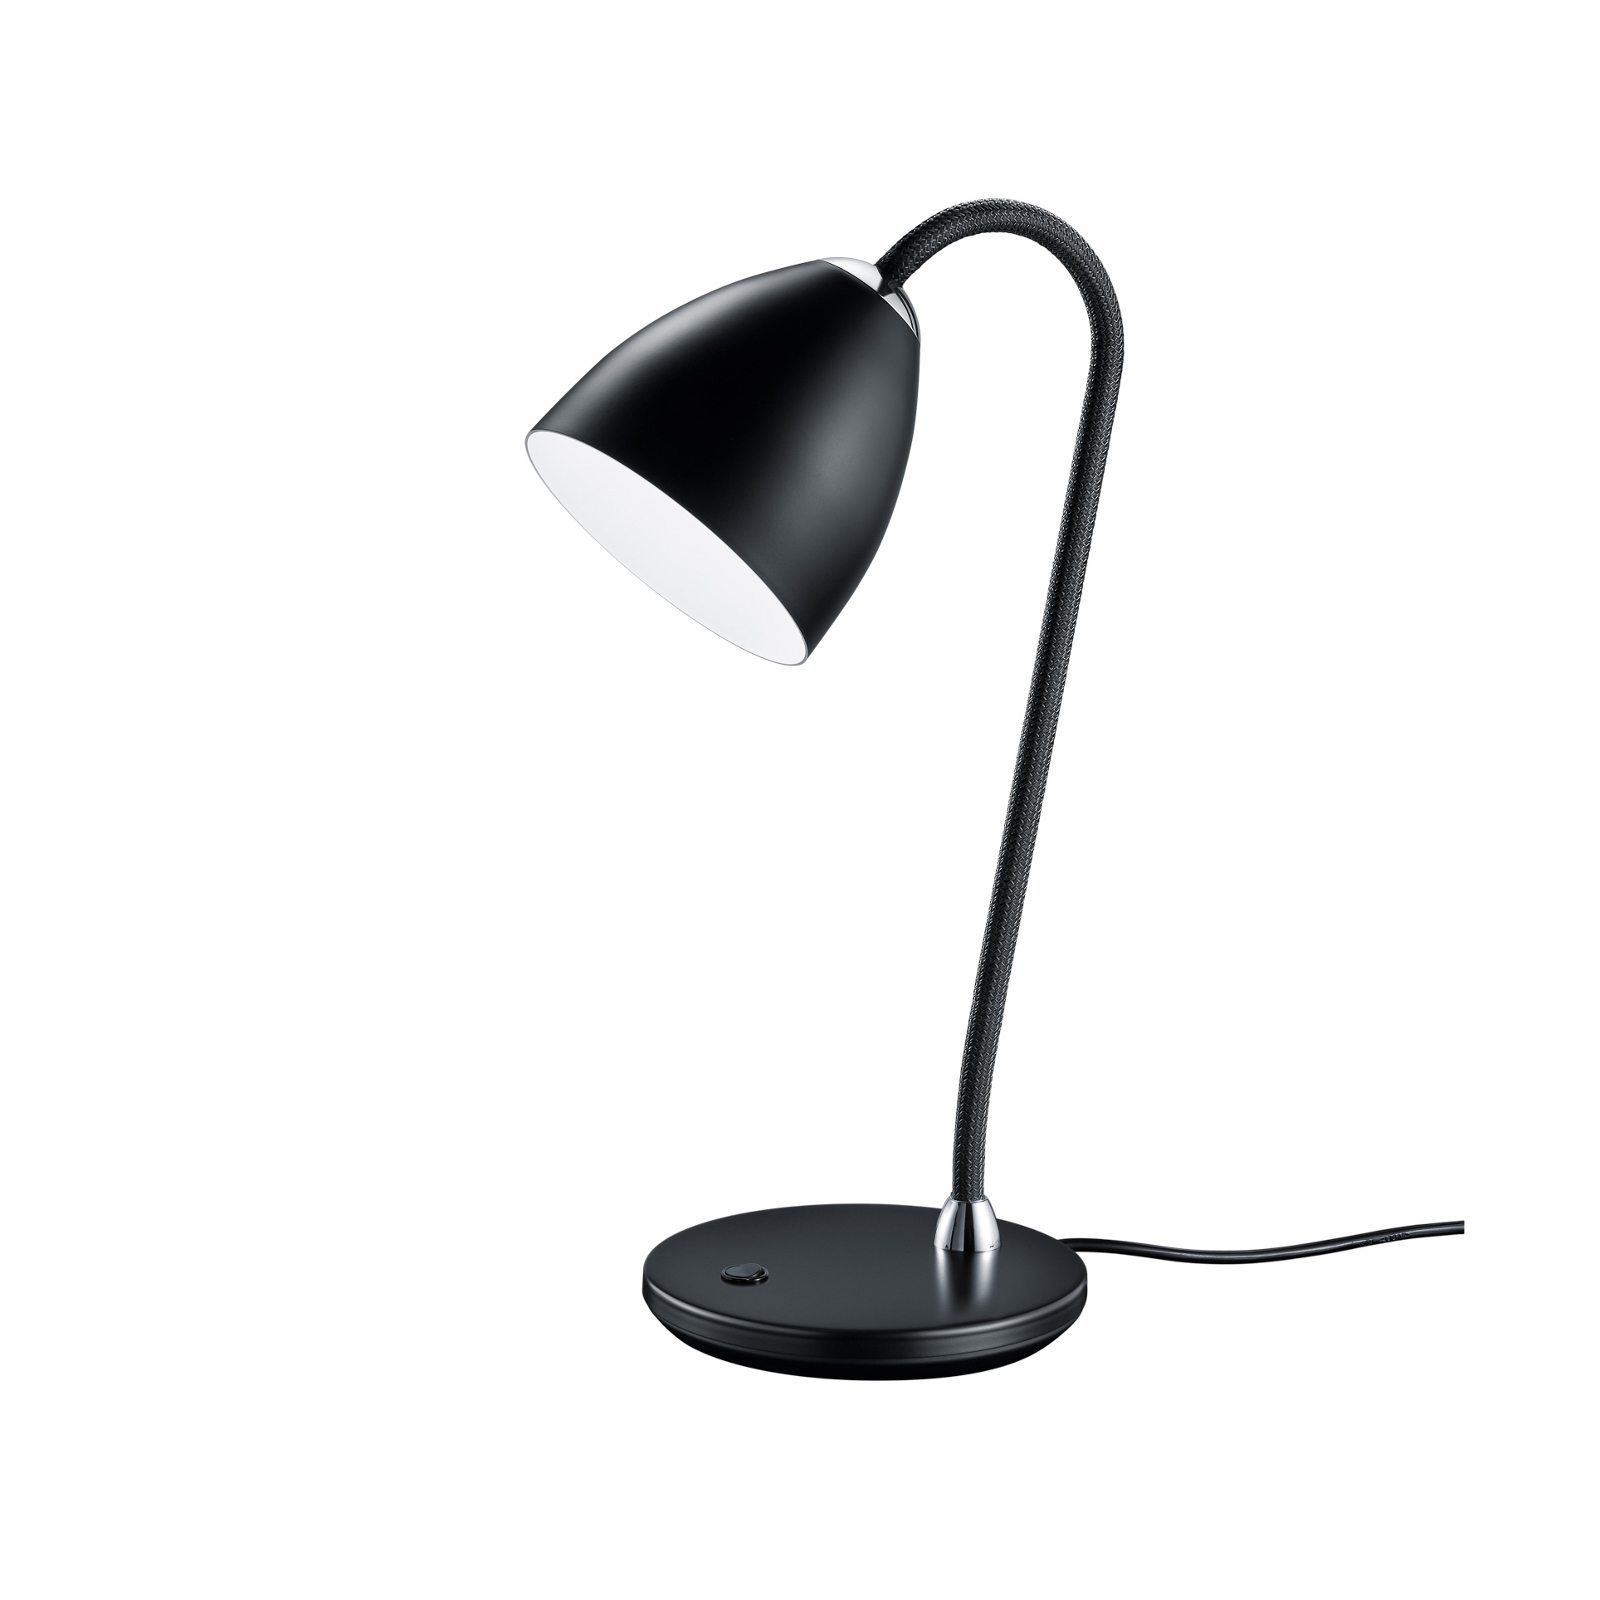 Baulmann 14.245.69 Table lamp with flex arm, black